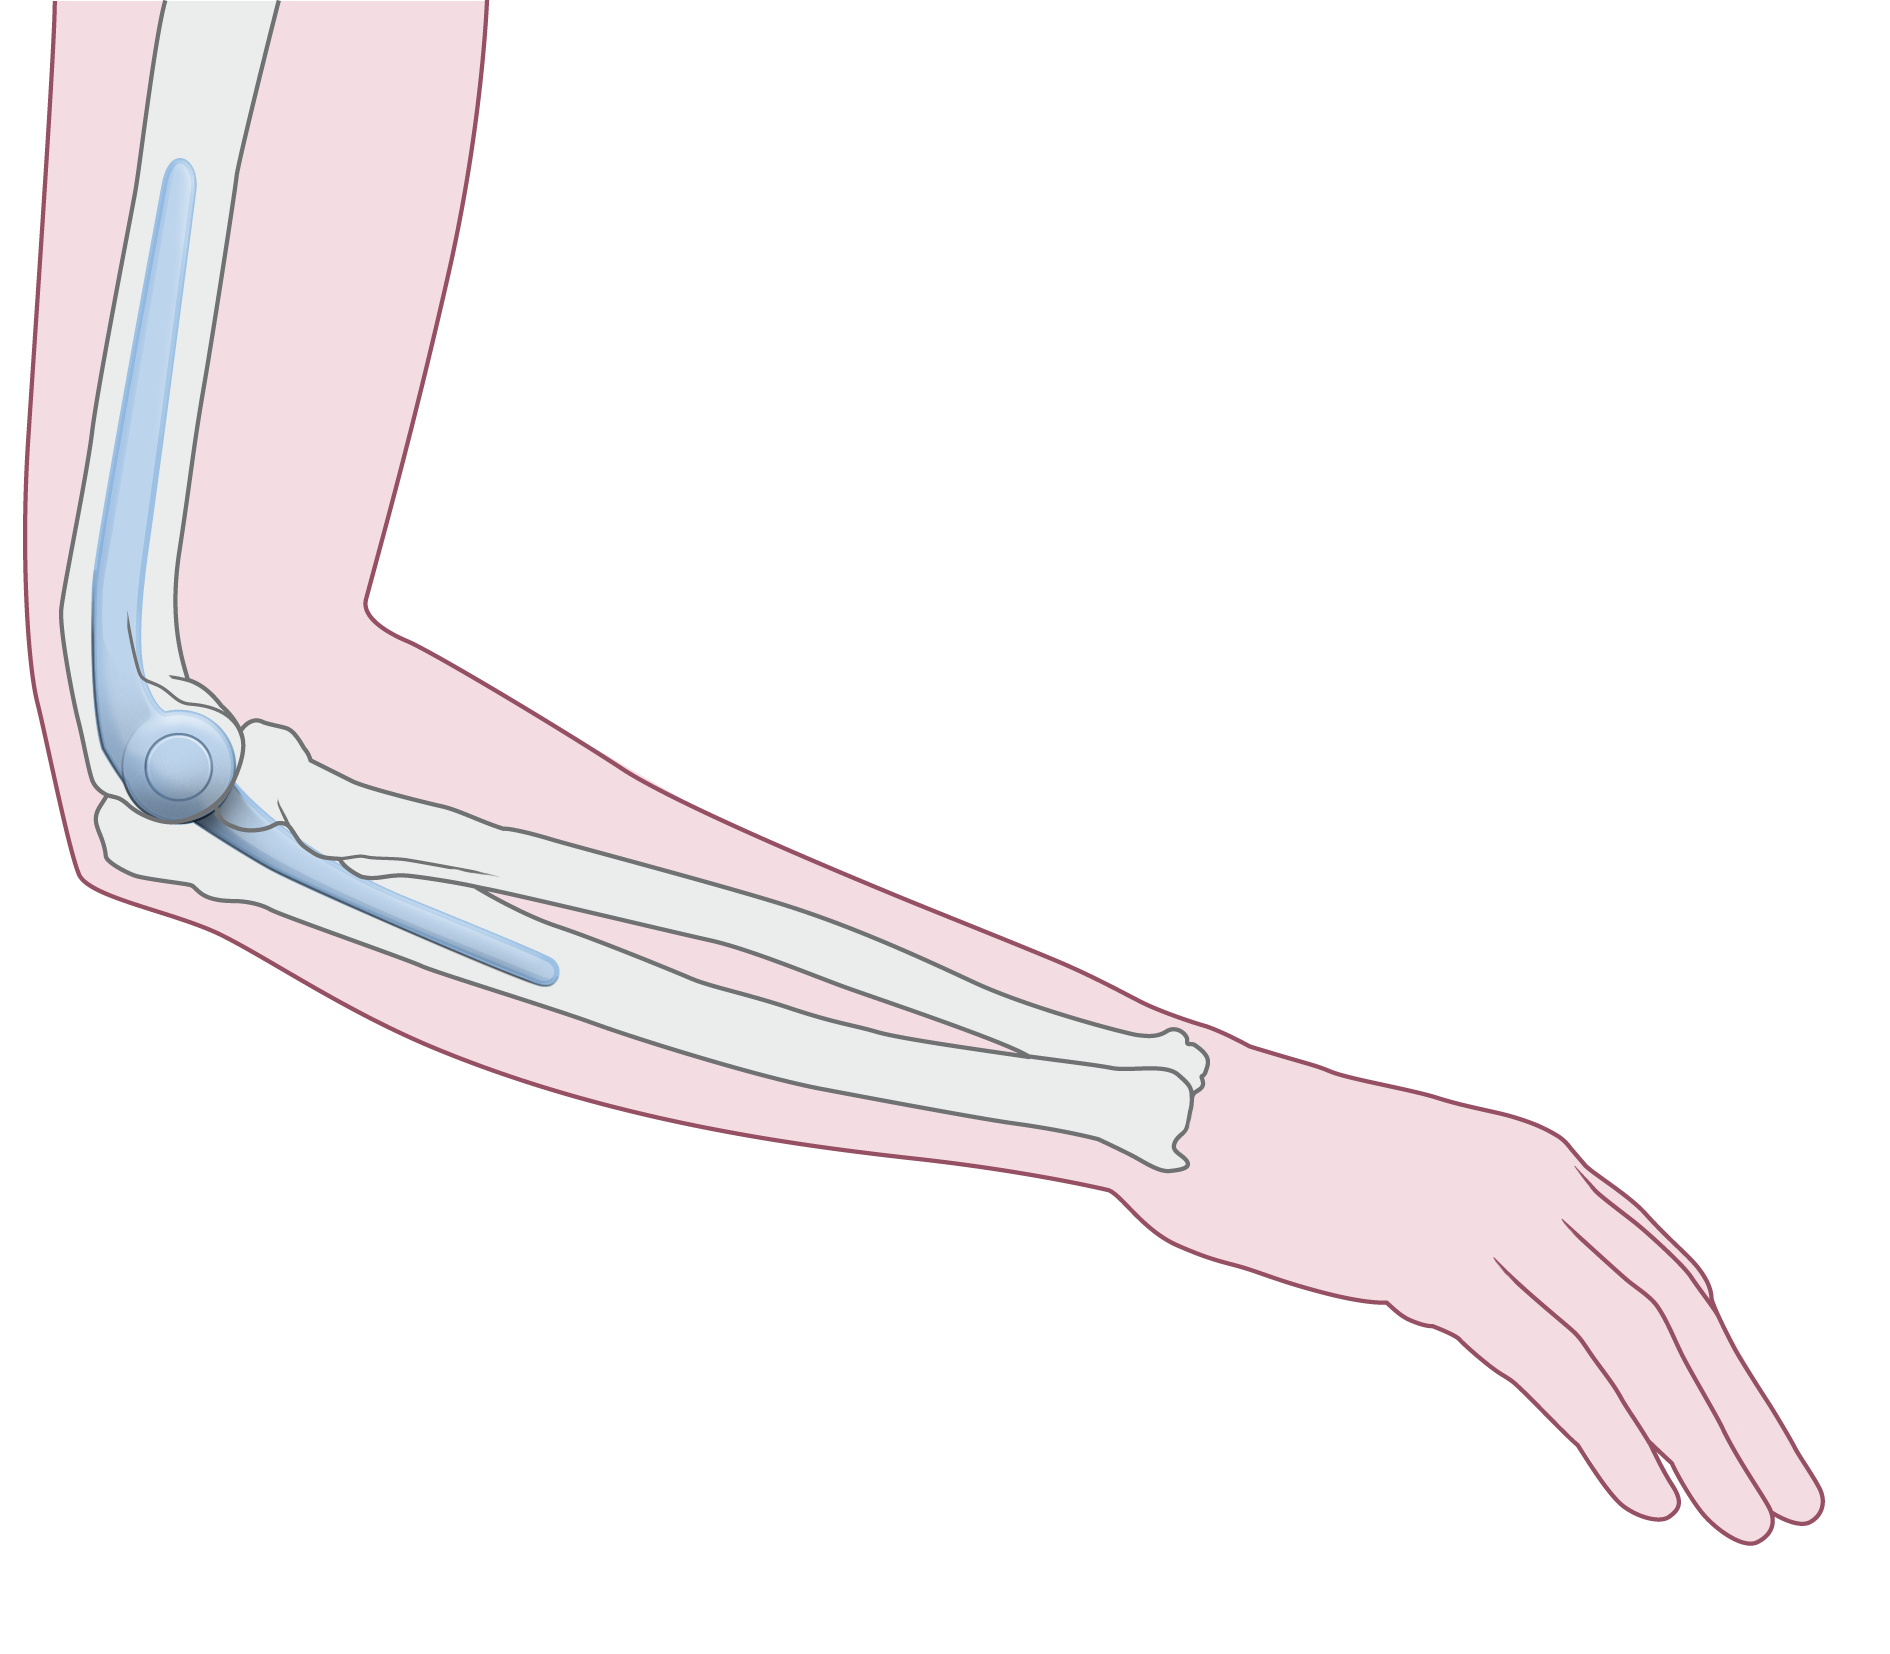 Soorten protheses Onderdelen Een elleboogprothese bestaat uit 2 onderdelen: een bovenarmdeel en een ellepijpdeel. Deze 2 onderdelen scharnieren ten opzichte van elkaar.